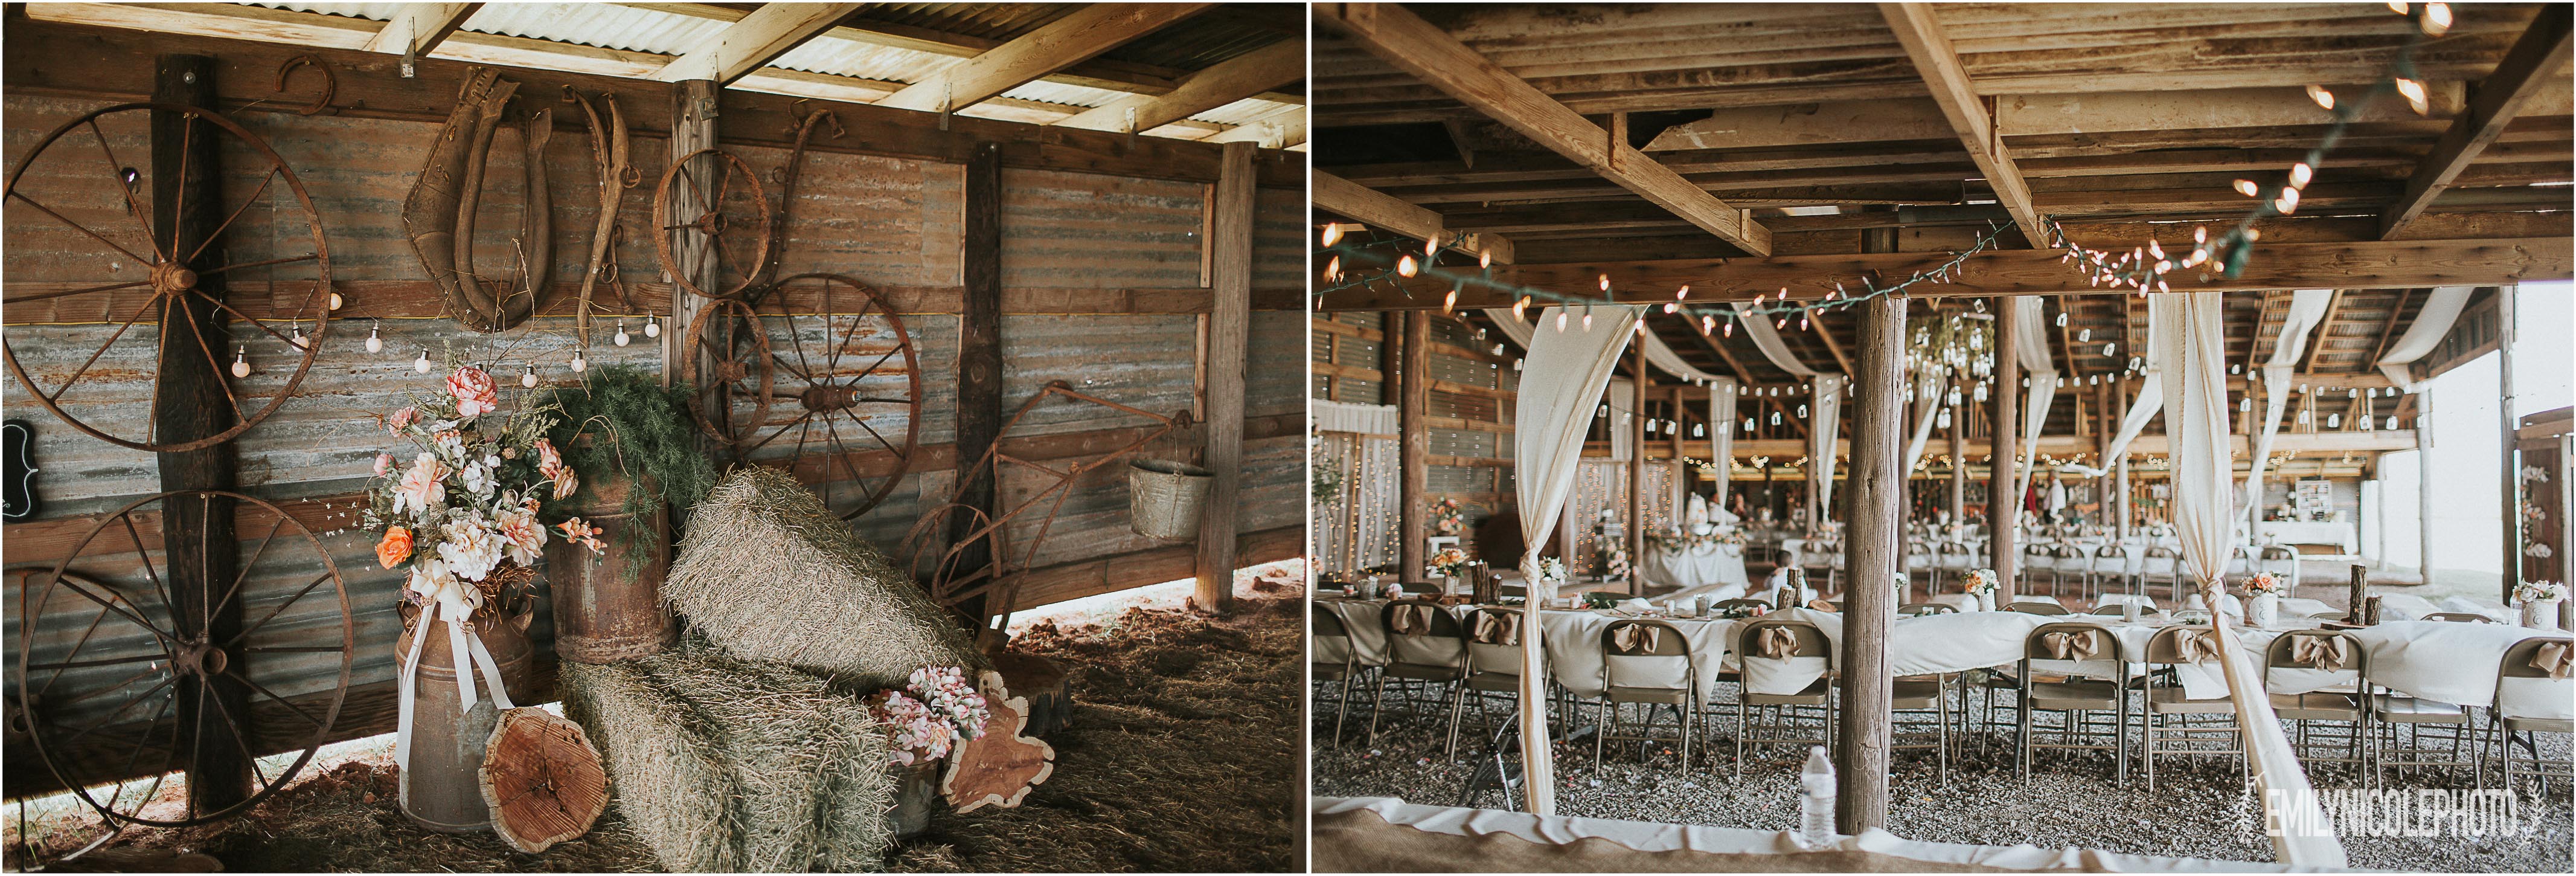 Rustic DIY Farm Wedding - emilynicolephoto.com